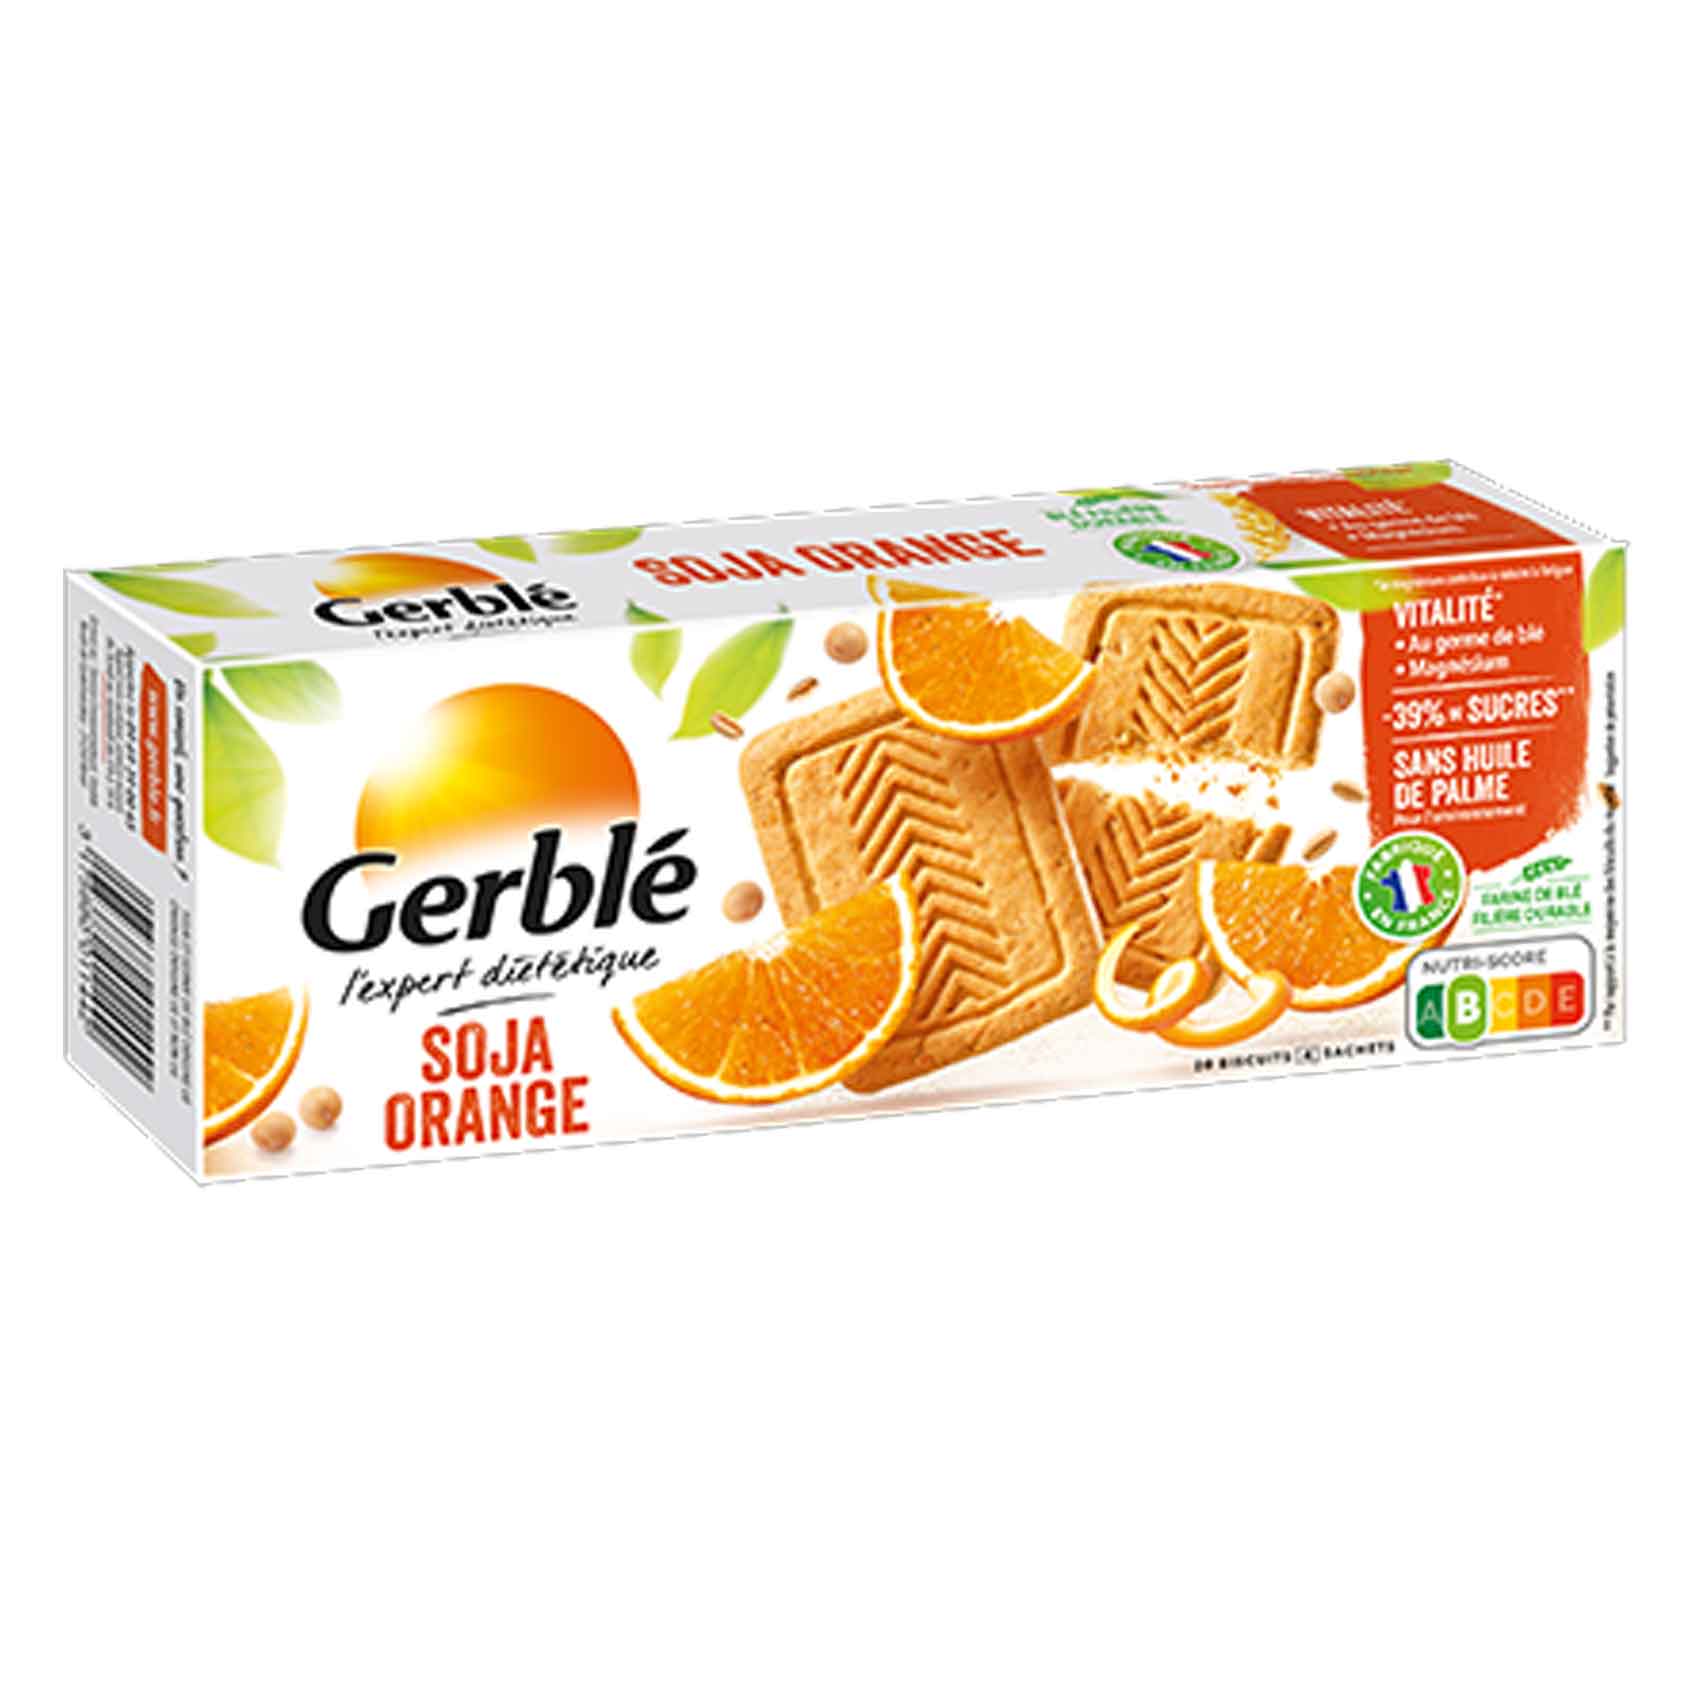 Gerble Biscuit Soja Orange 280GR